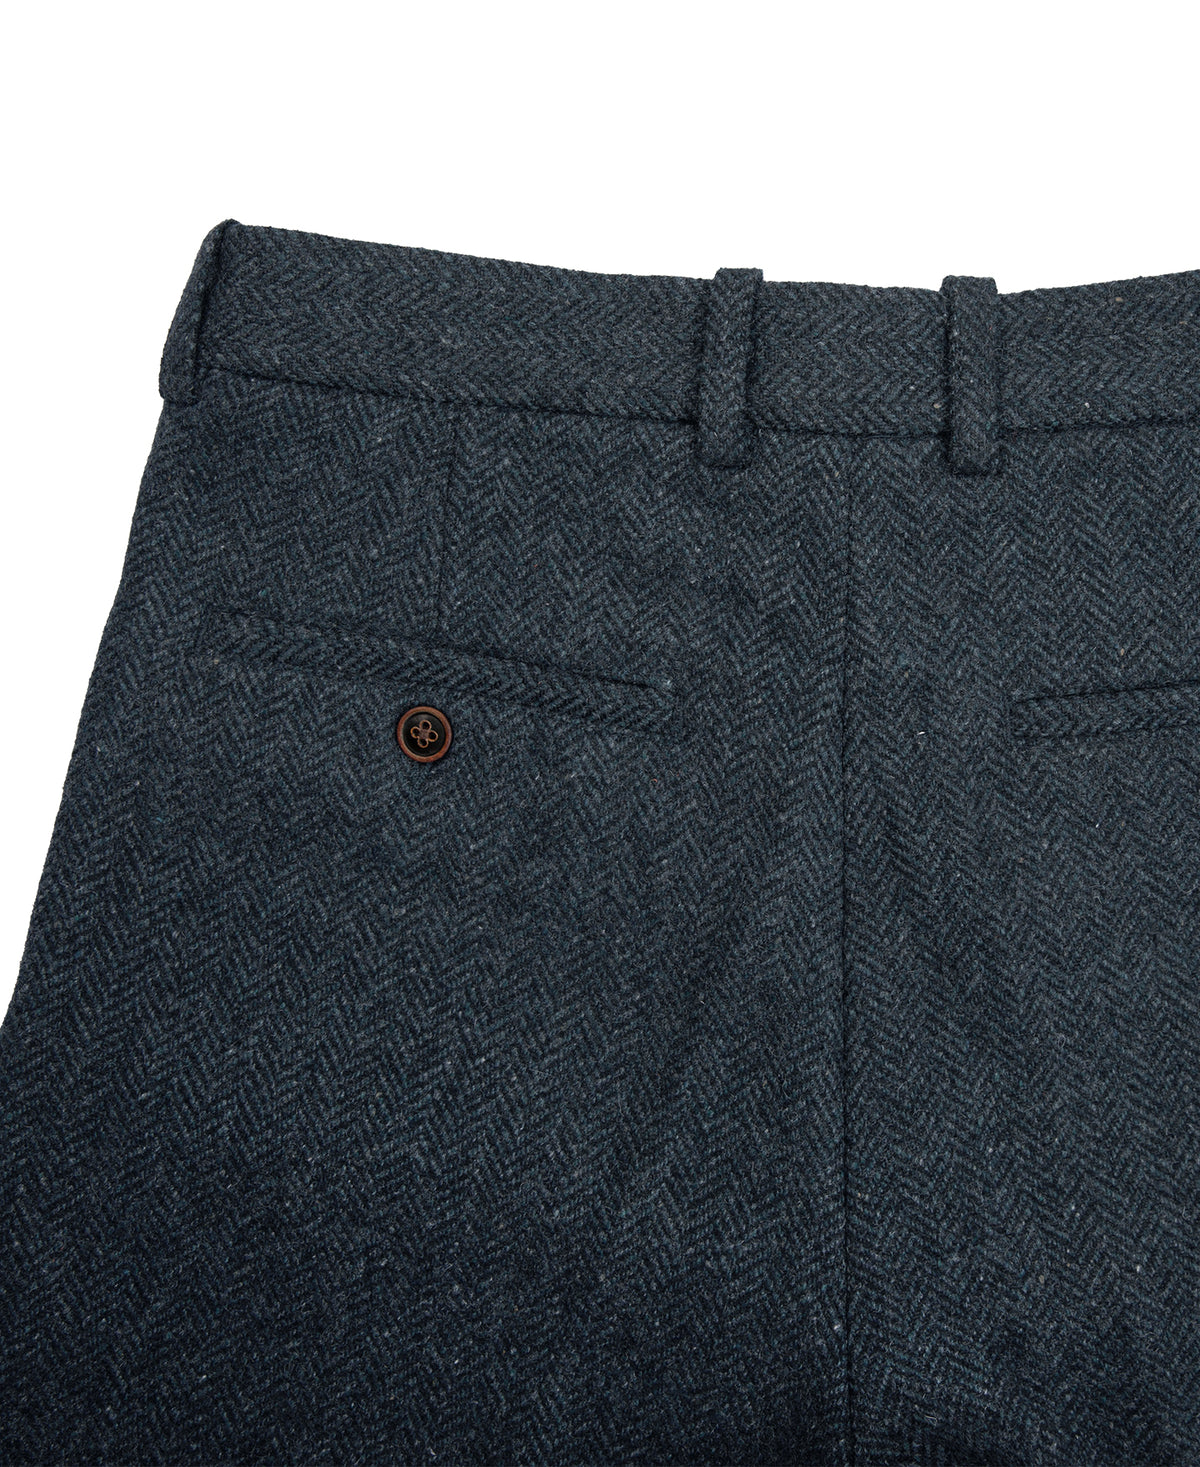 1930s American Style Herringbone Navy Tweed Trousers